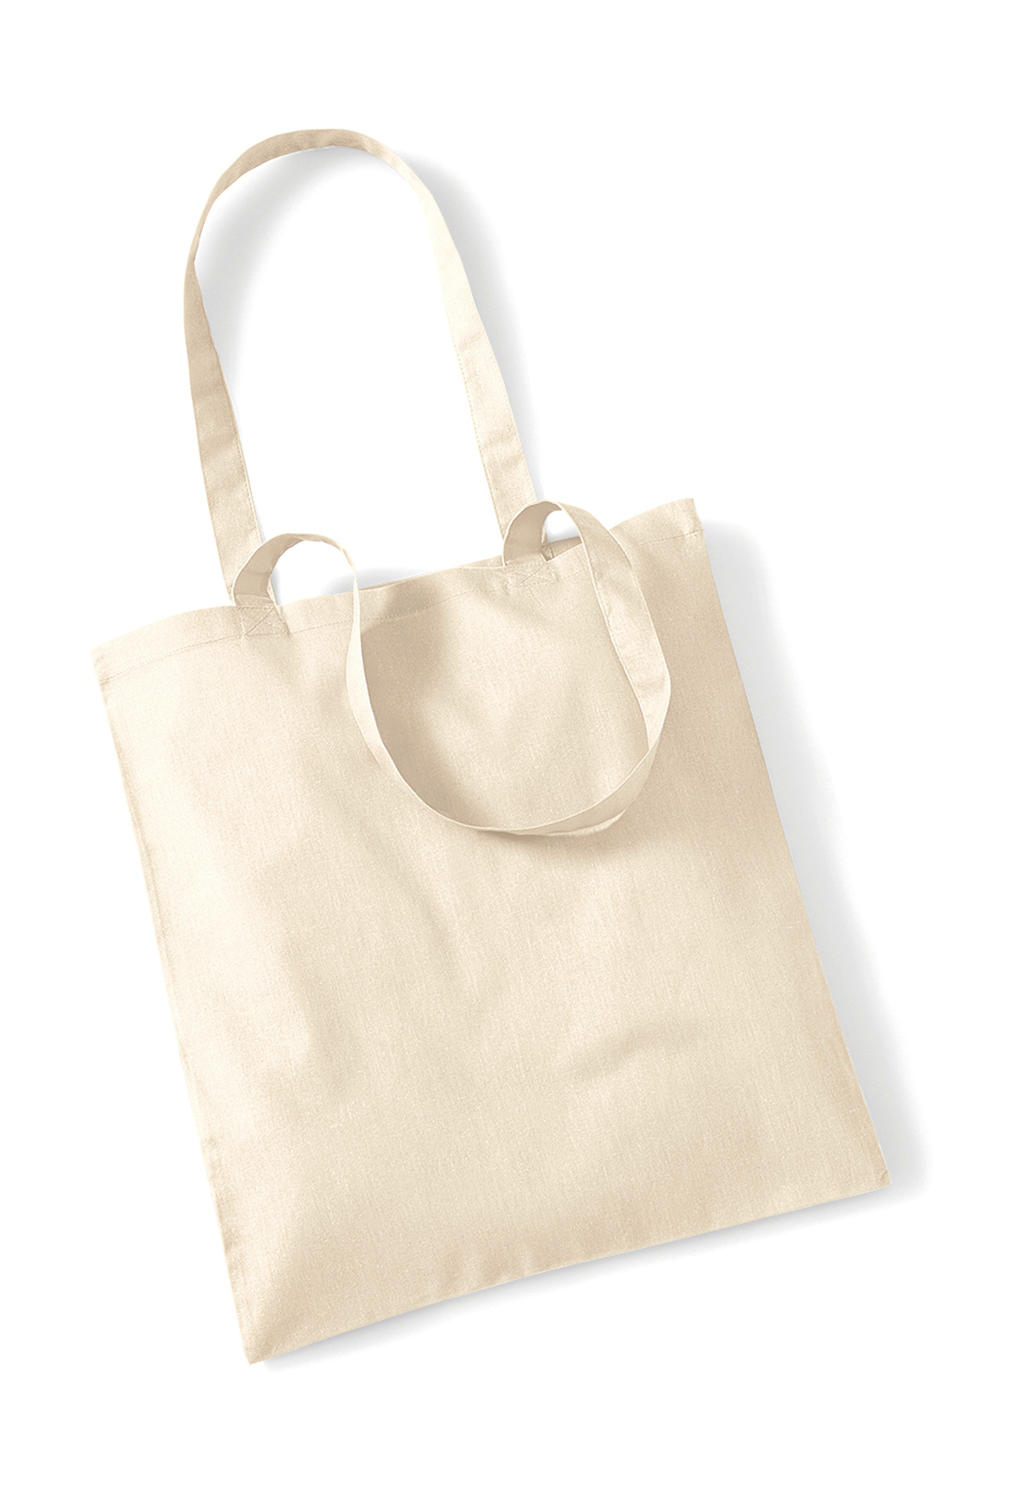 Bag for Life - Long Handles - natural